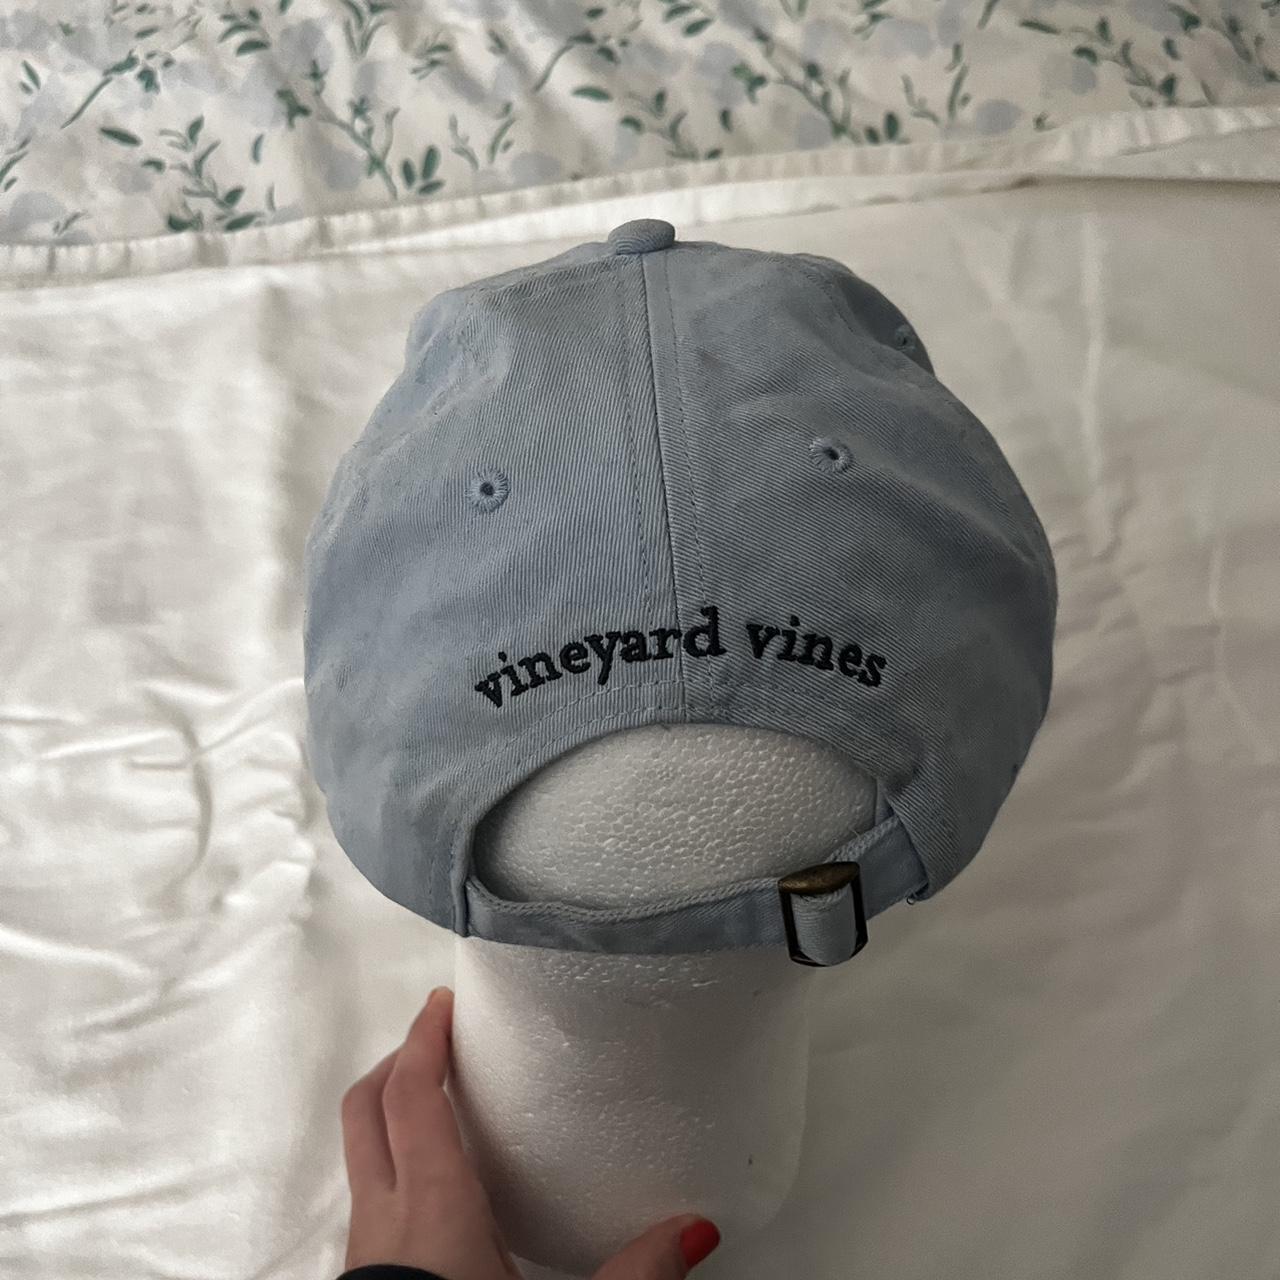 Vineyard vines baseball hat - Depop